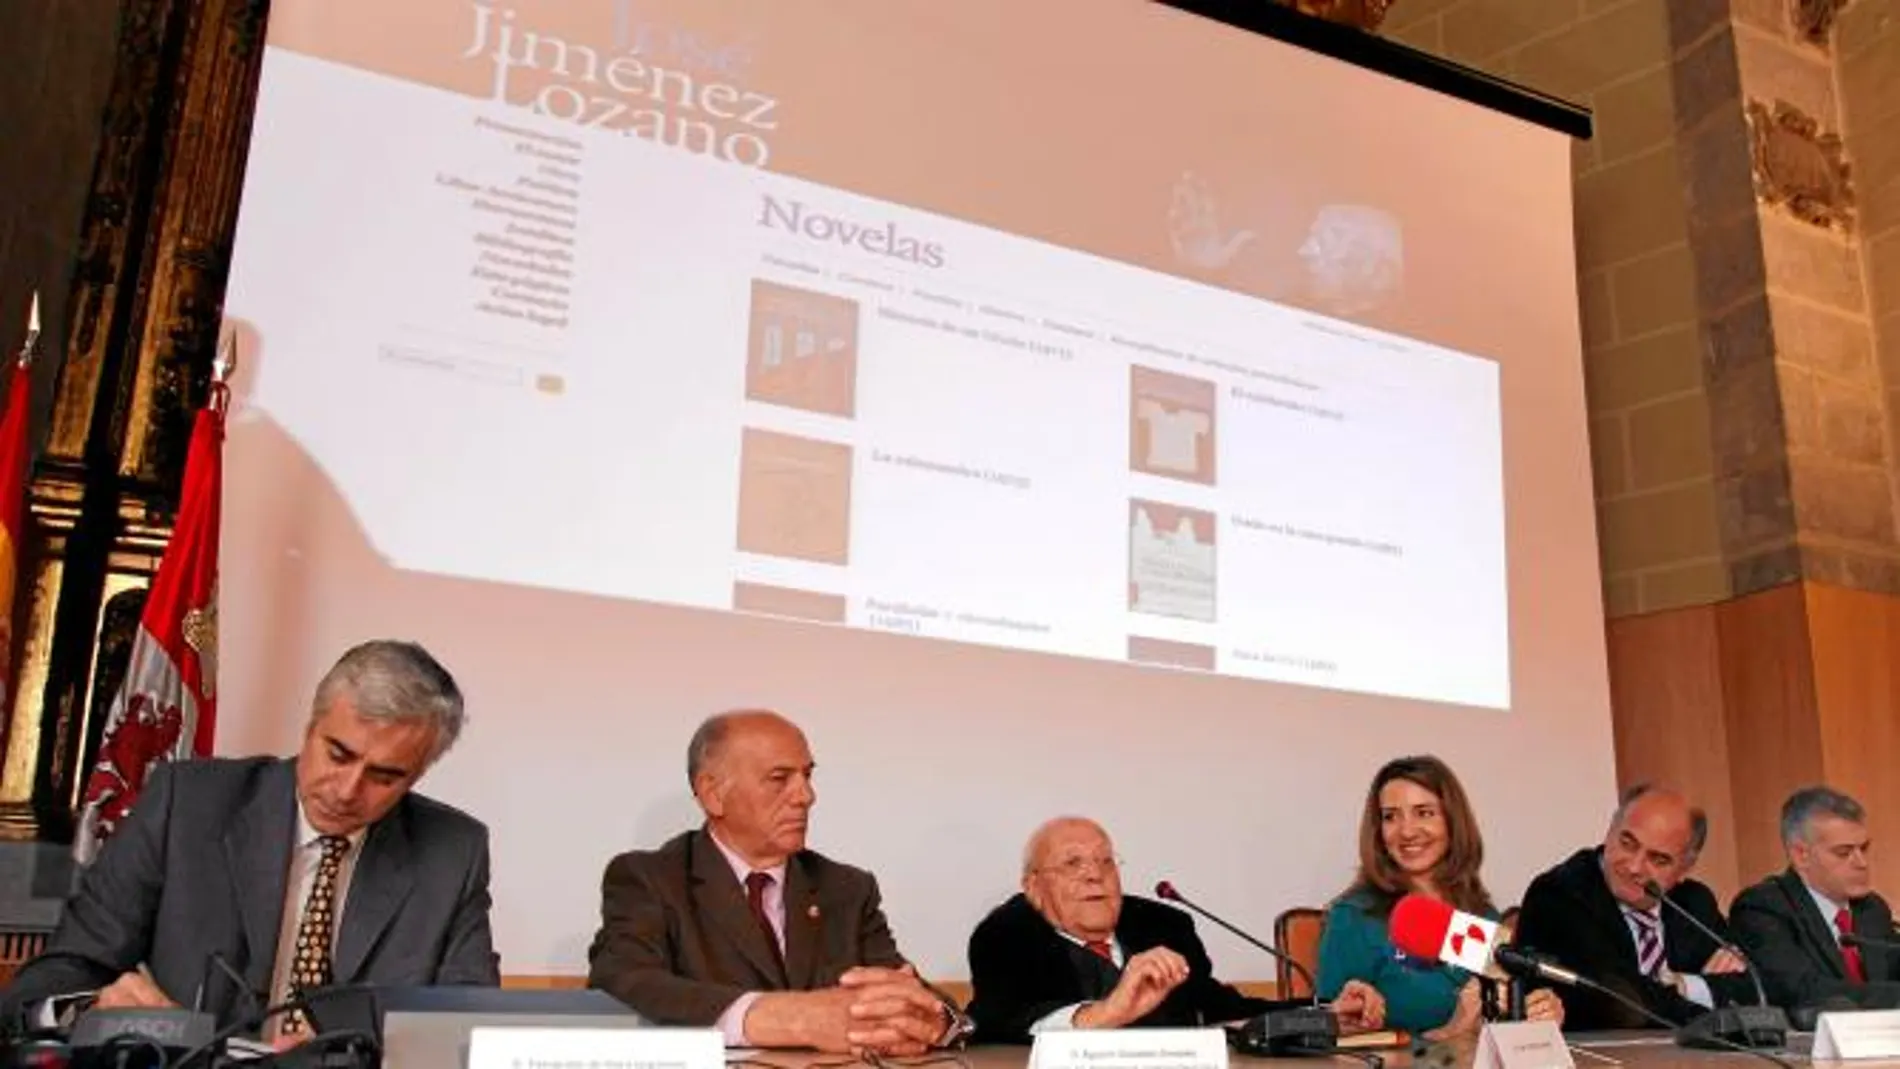 El legado literario de Jiménez Lozano se abre a todo el mundo a través de una web